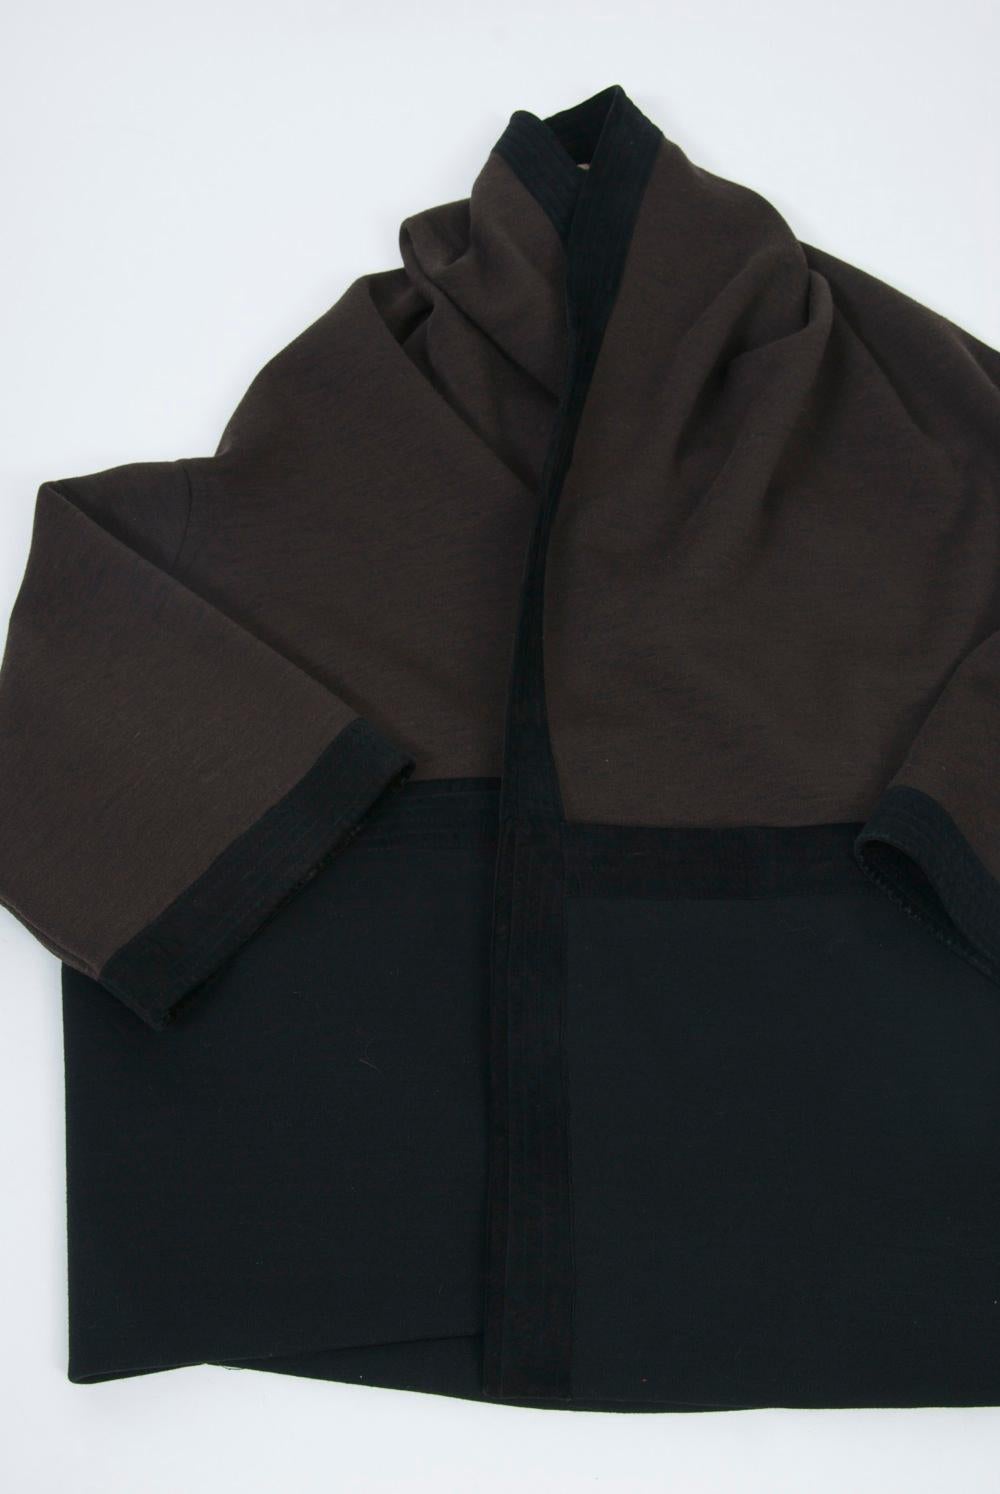 Romeo Gigli Brown/Black Kimono Jacket 3